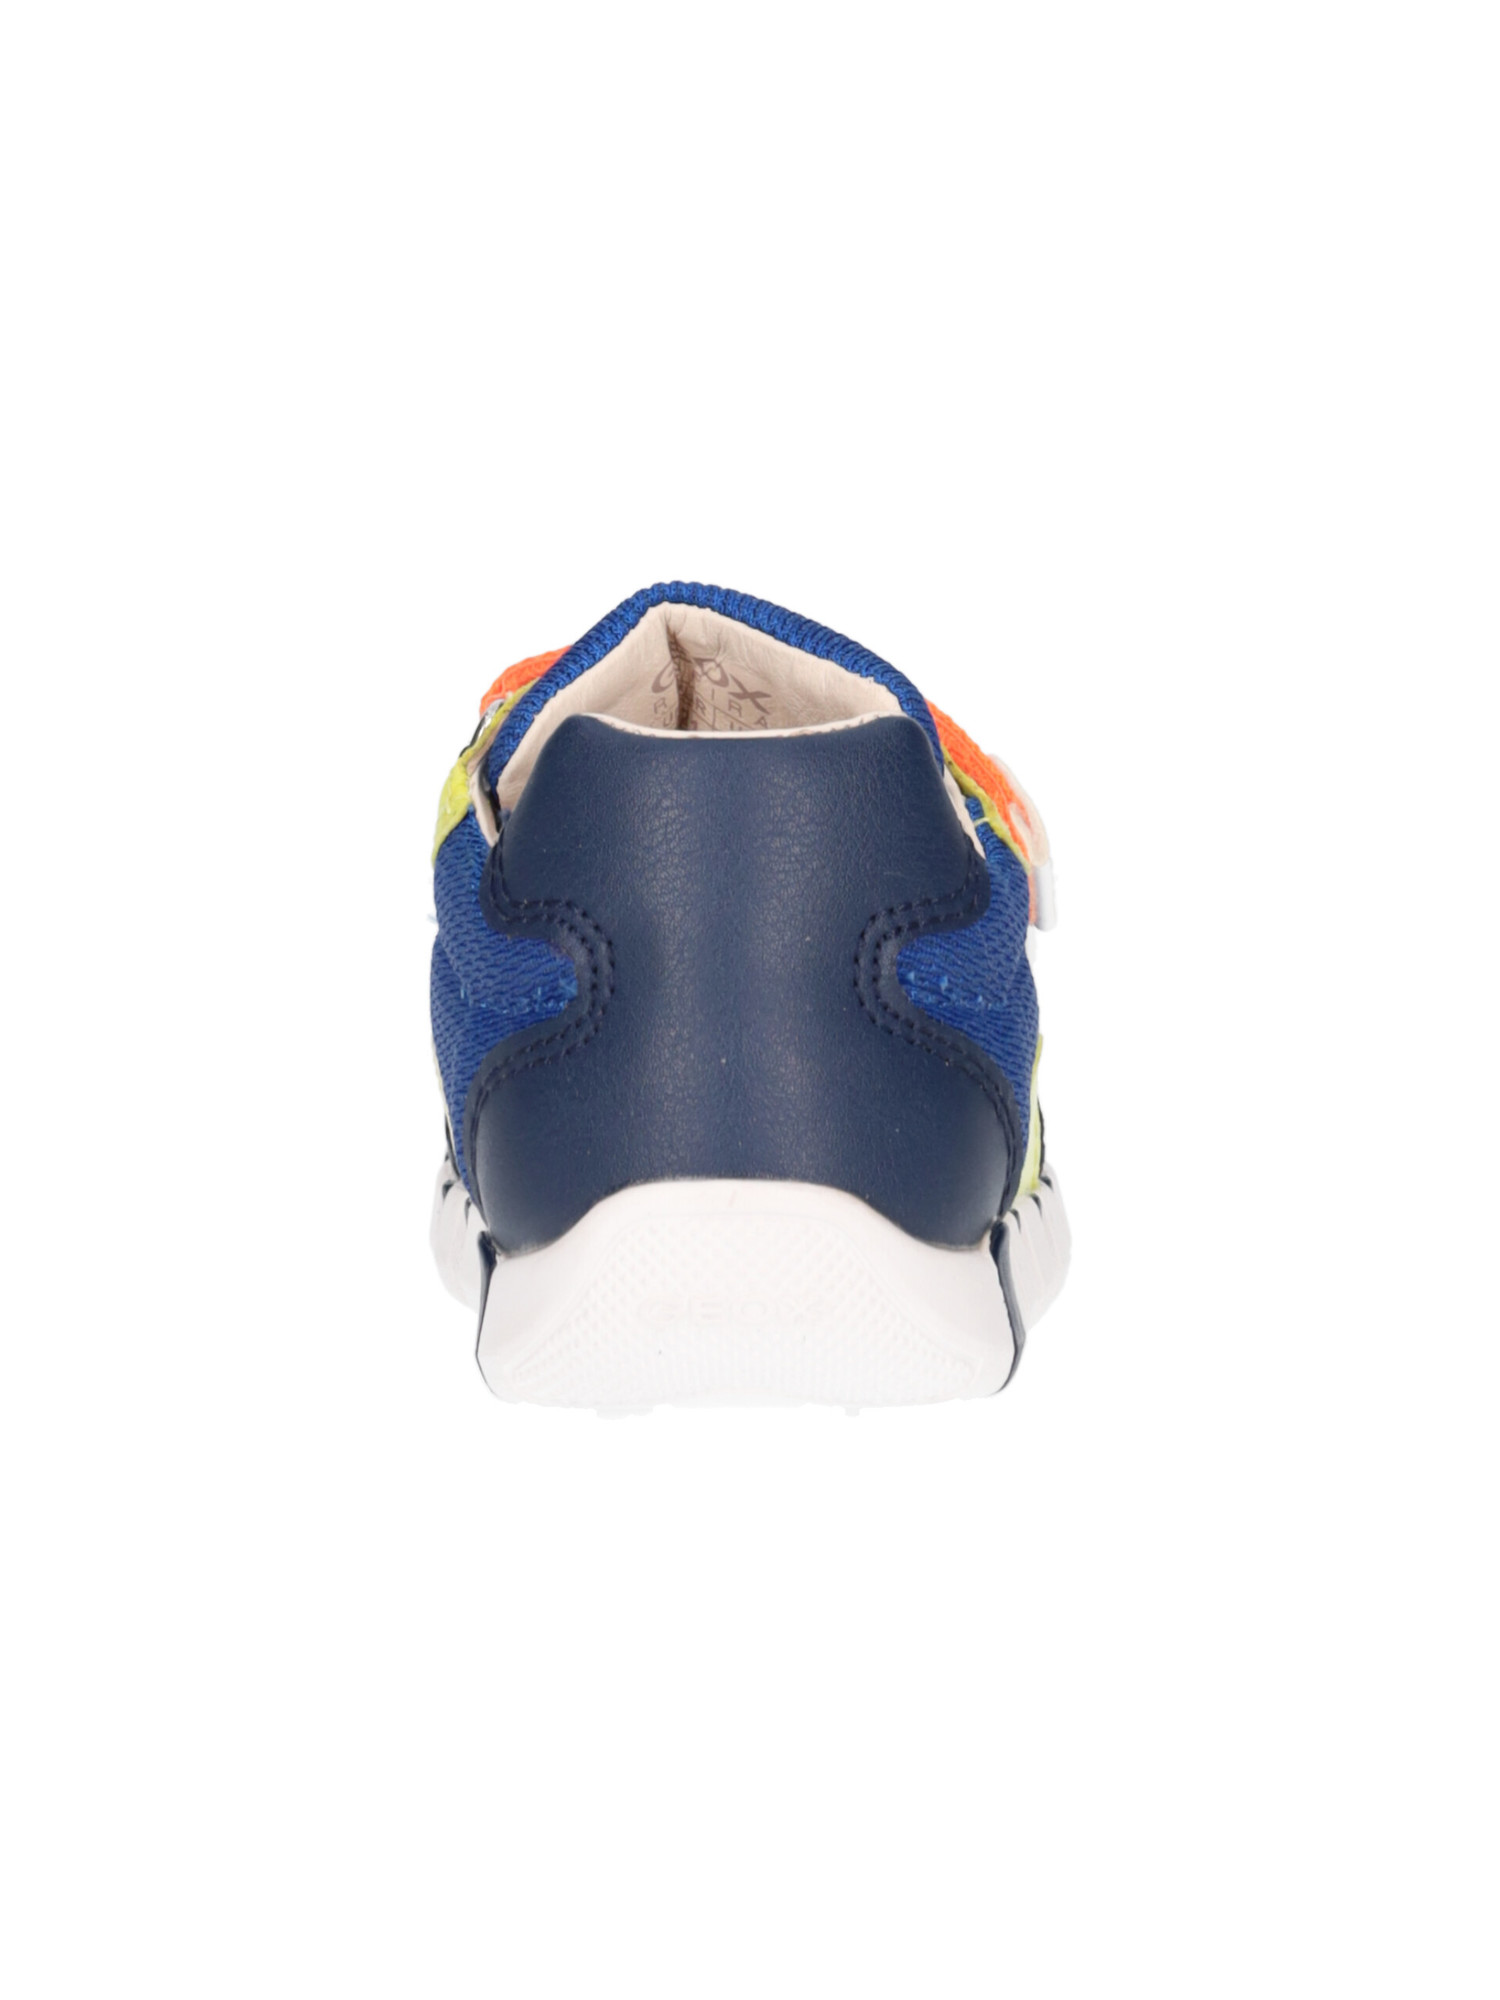 sneaker-geox-iupidoo-primi-passi-bambino-blu-d57a02